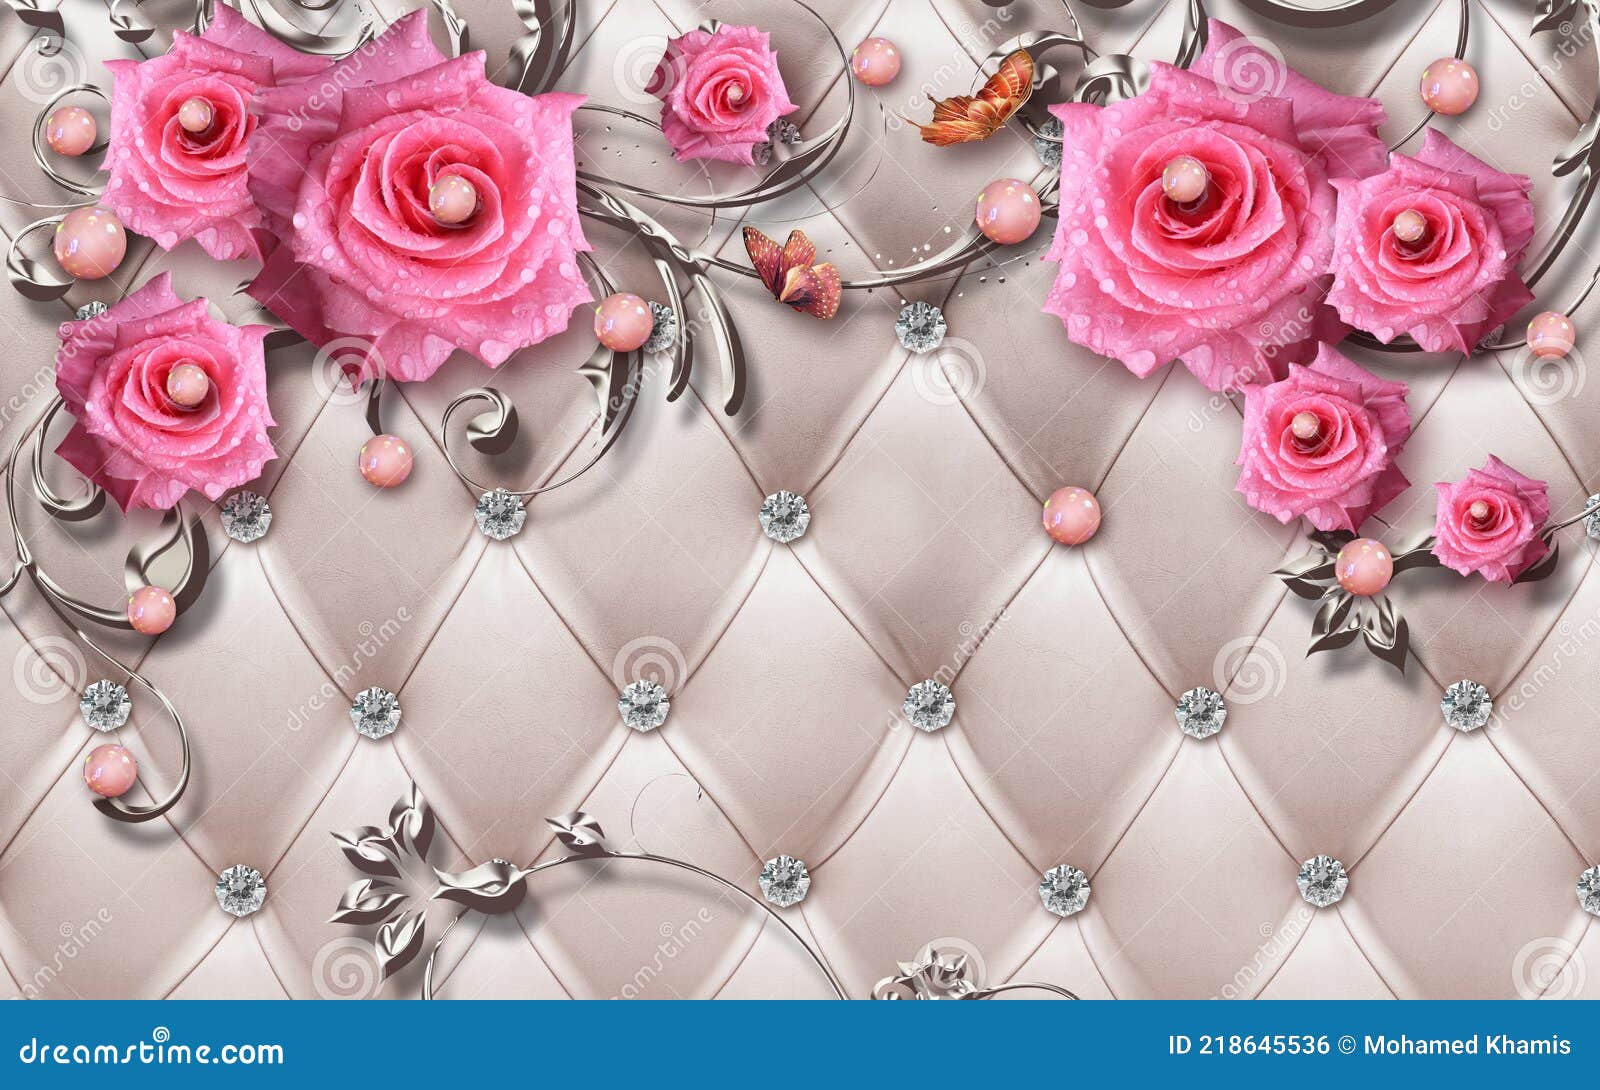 Hình nền 3D hoa làm bằng đá phong cách trang sức màu hồng chắc chắn sẽ khiến bạn thích thú với sự kết hợp tinh tế giữa màu sắc và chất liệu. Đây là một lựa chọn hoàn hảo cho những ai yêu thích phong cách vintage và cổ điển. Hãy tải ngay hình nền này để tạo điểm nhấn độc đáo cho màn hình của bạn!